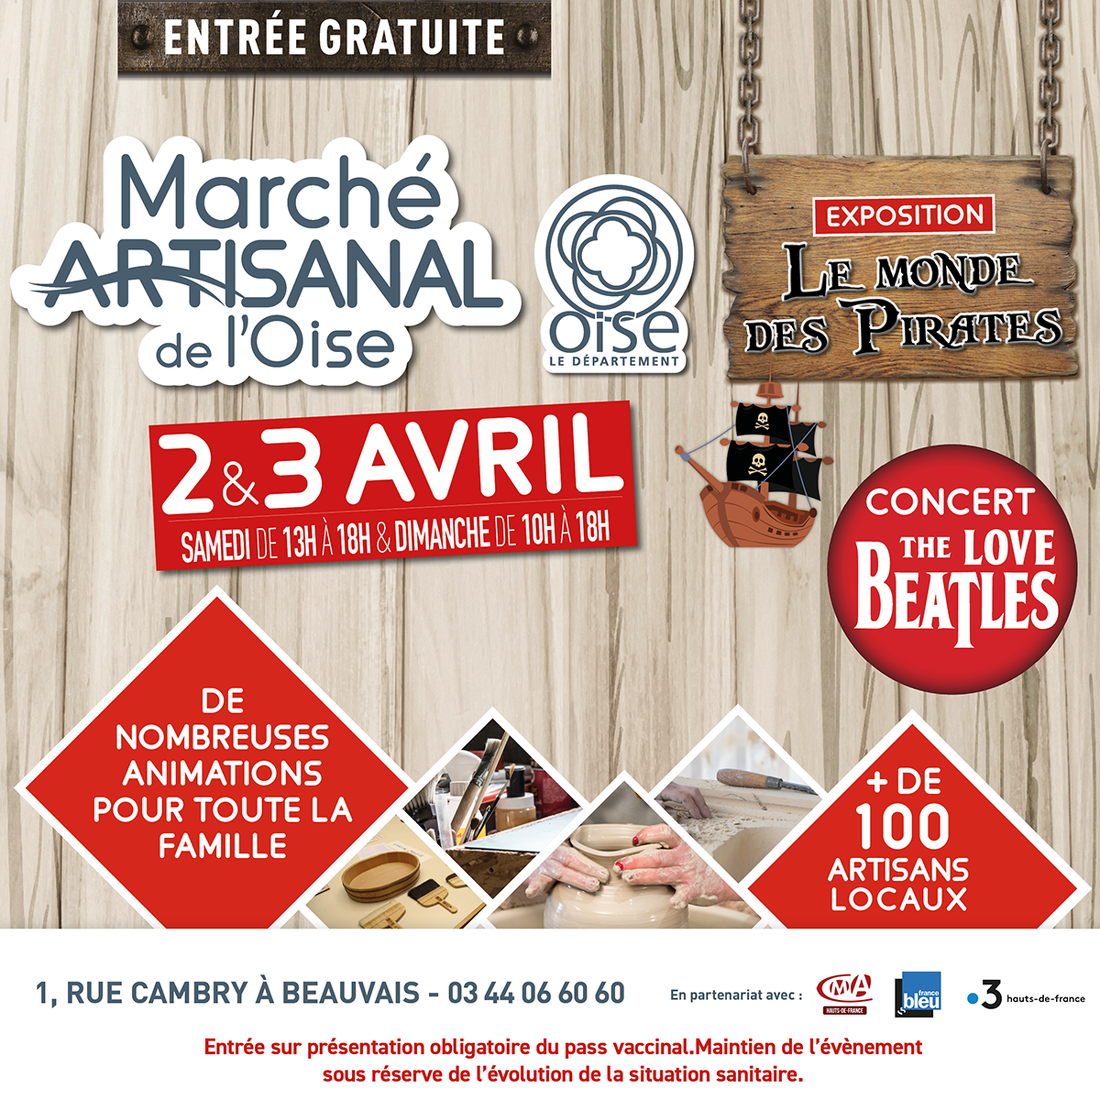 Marché Artisanal de l'Oise - 2 et 3 avril 2022